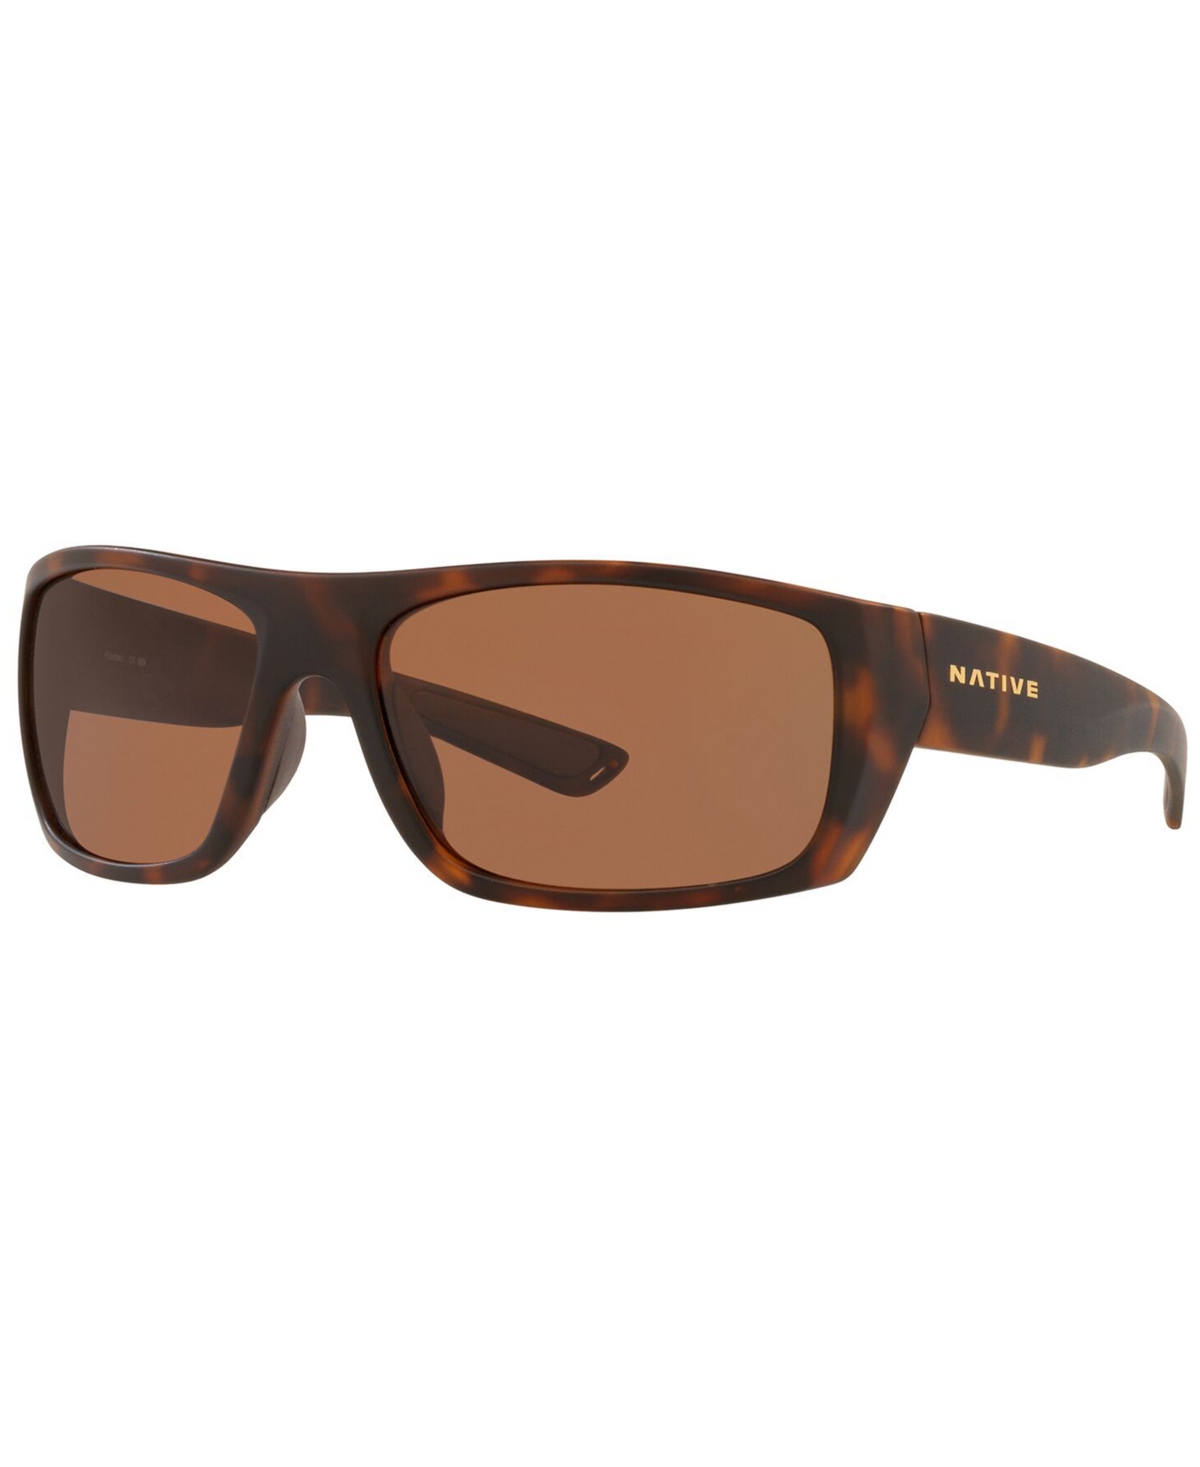 Native Men's Polarized Sunglasses, XD0063 - DESERT TORTOISE/BROWN